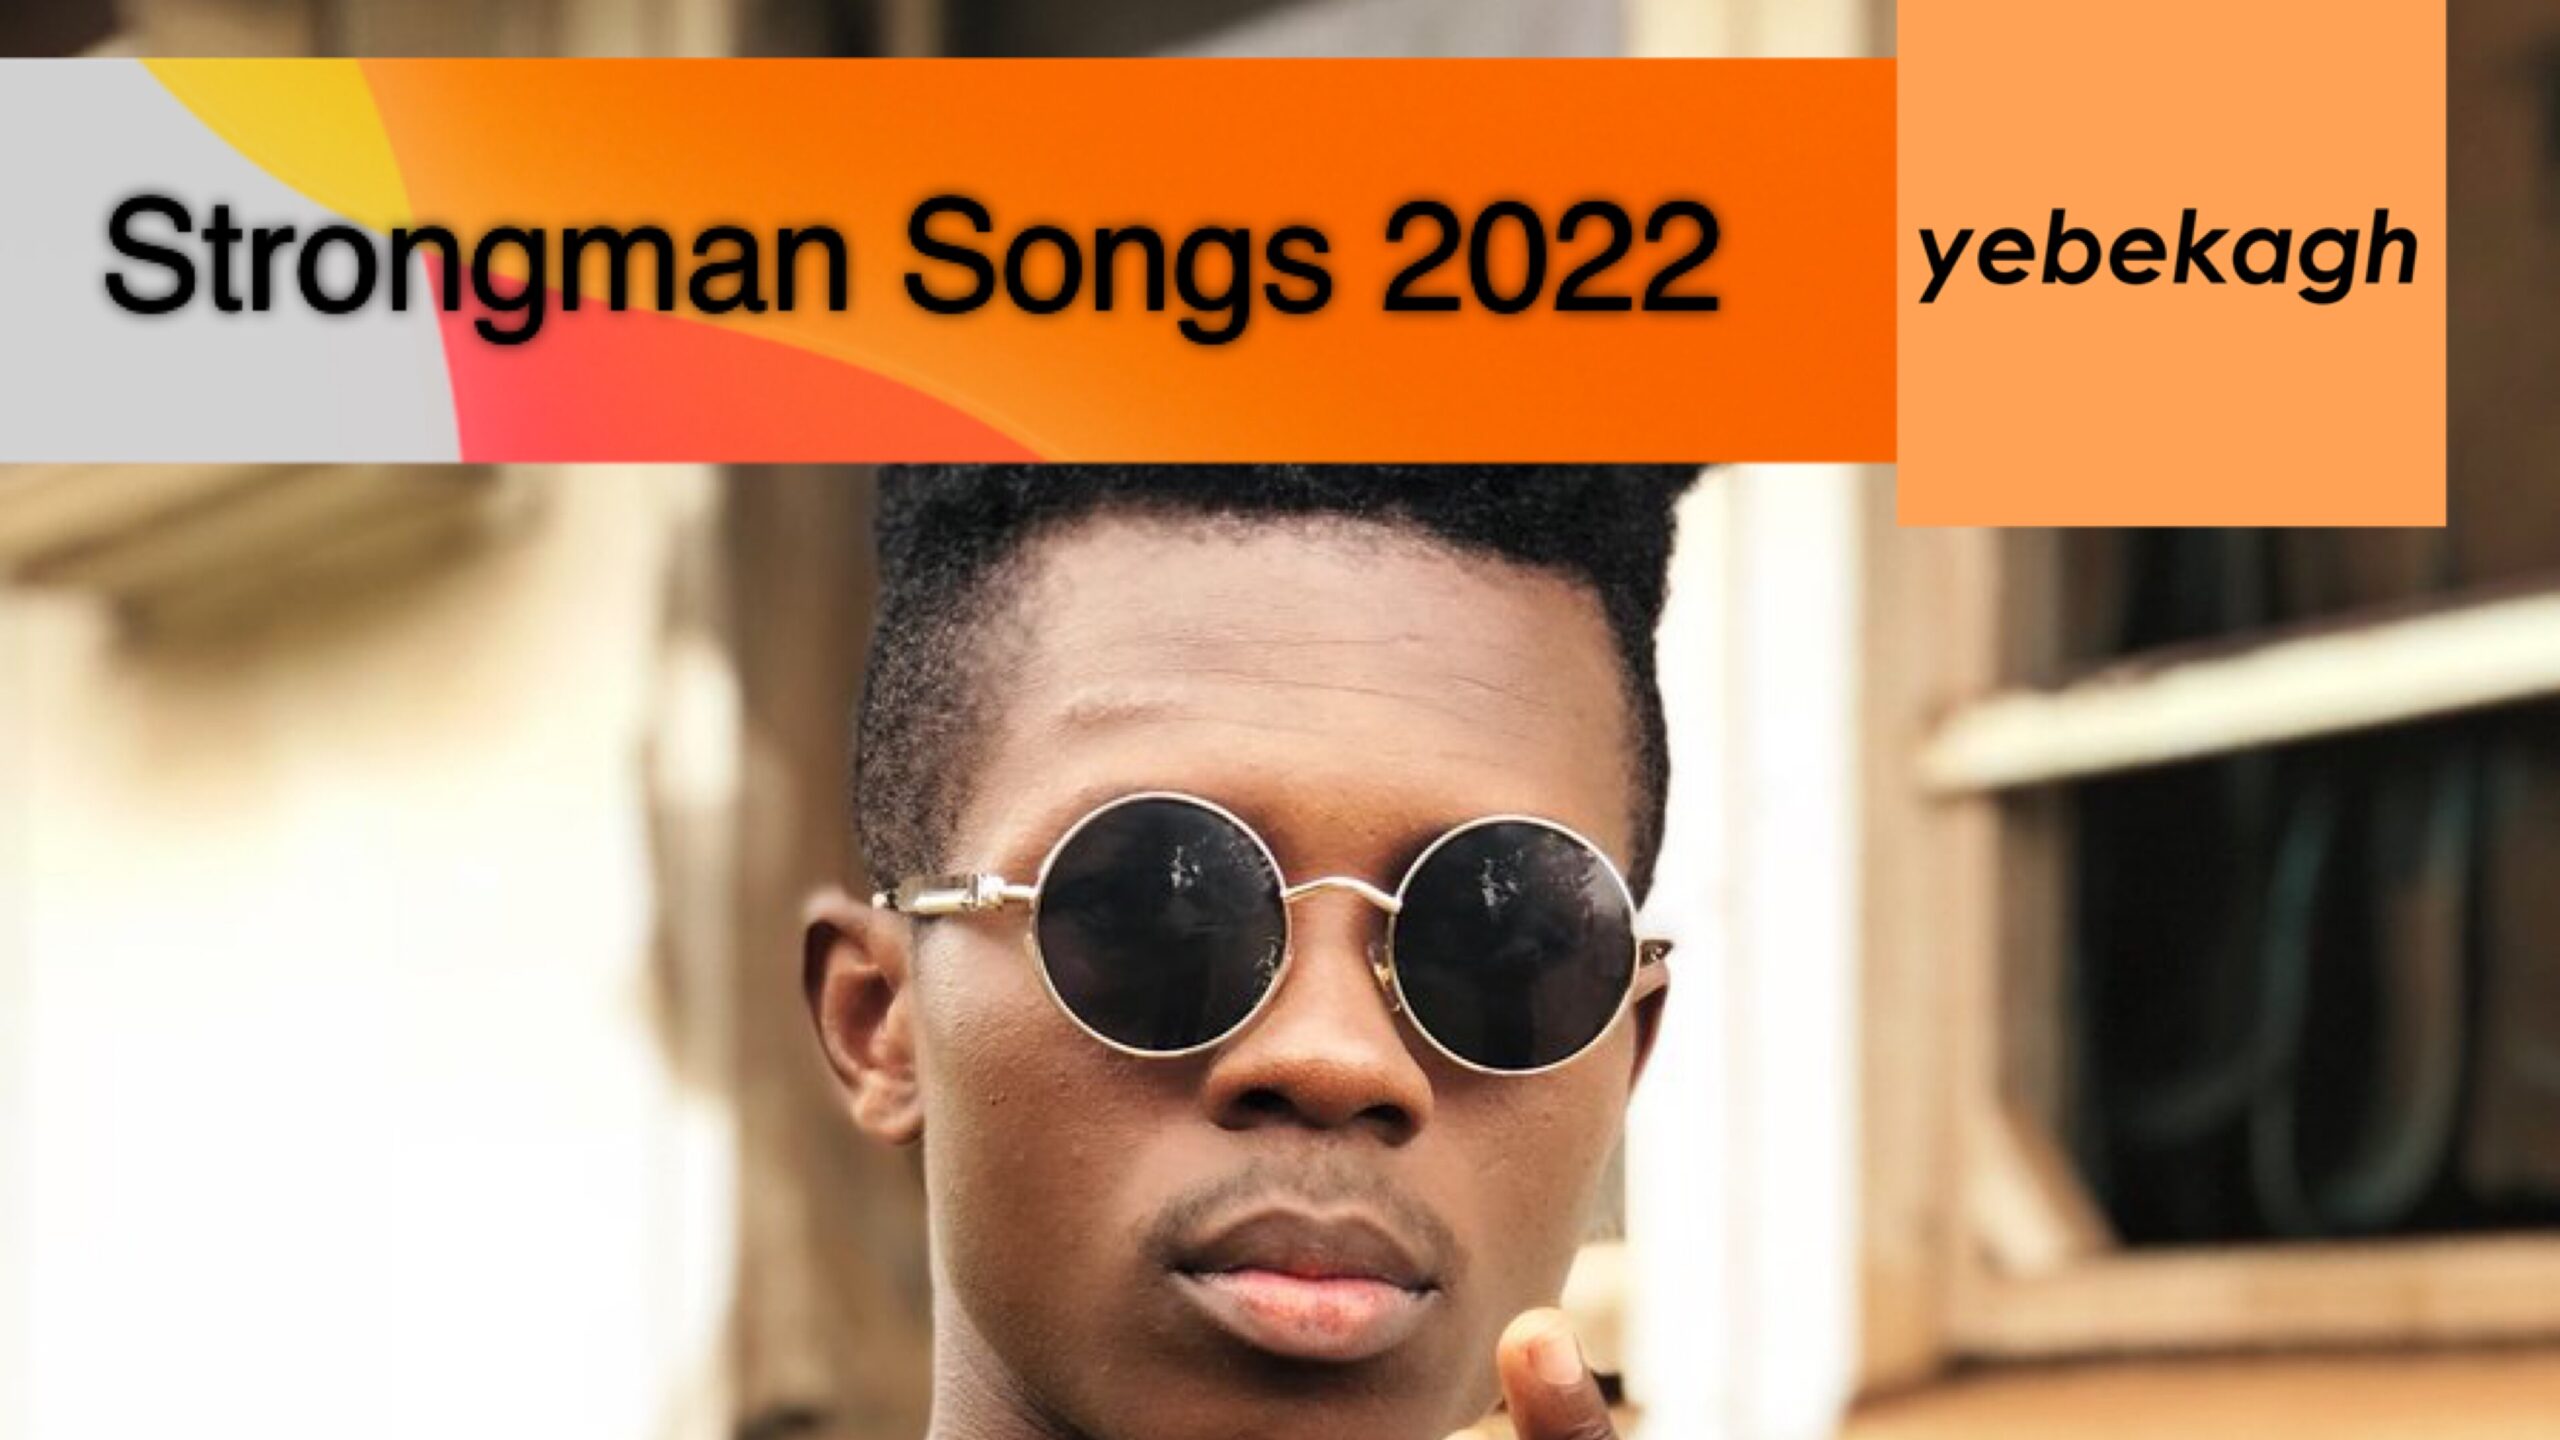 Full List of Strongman Songs in 2022